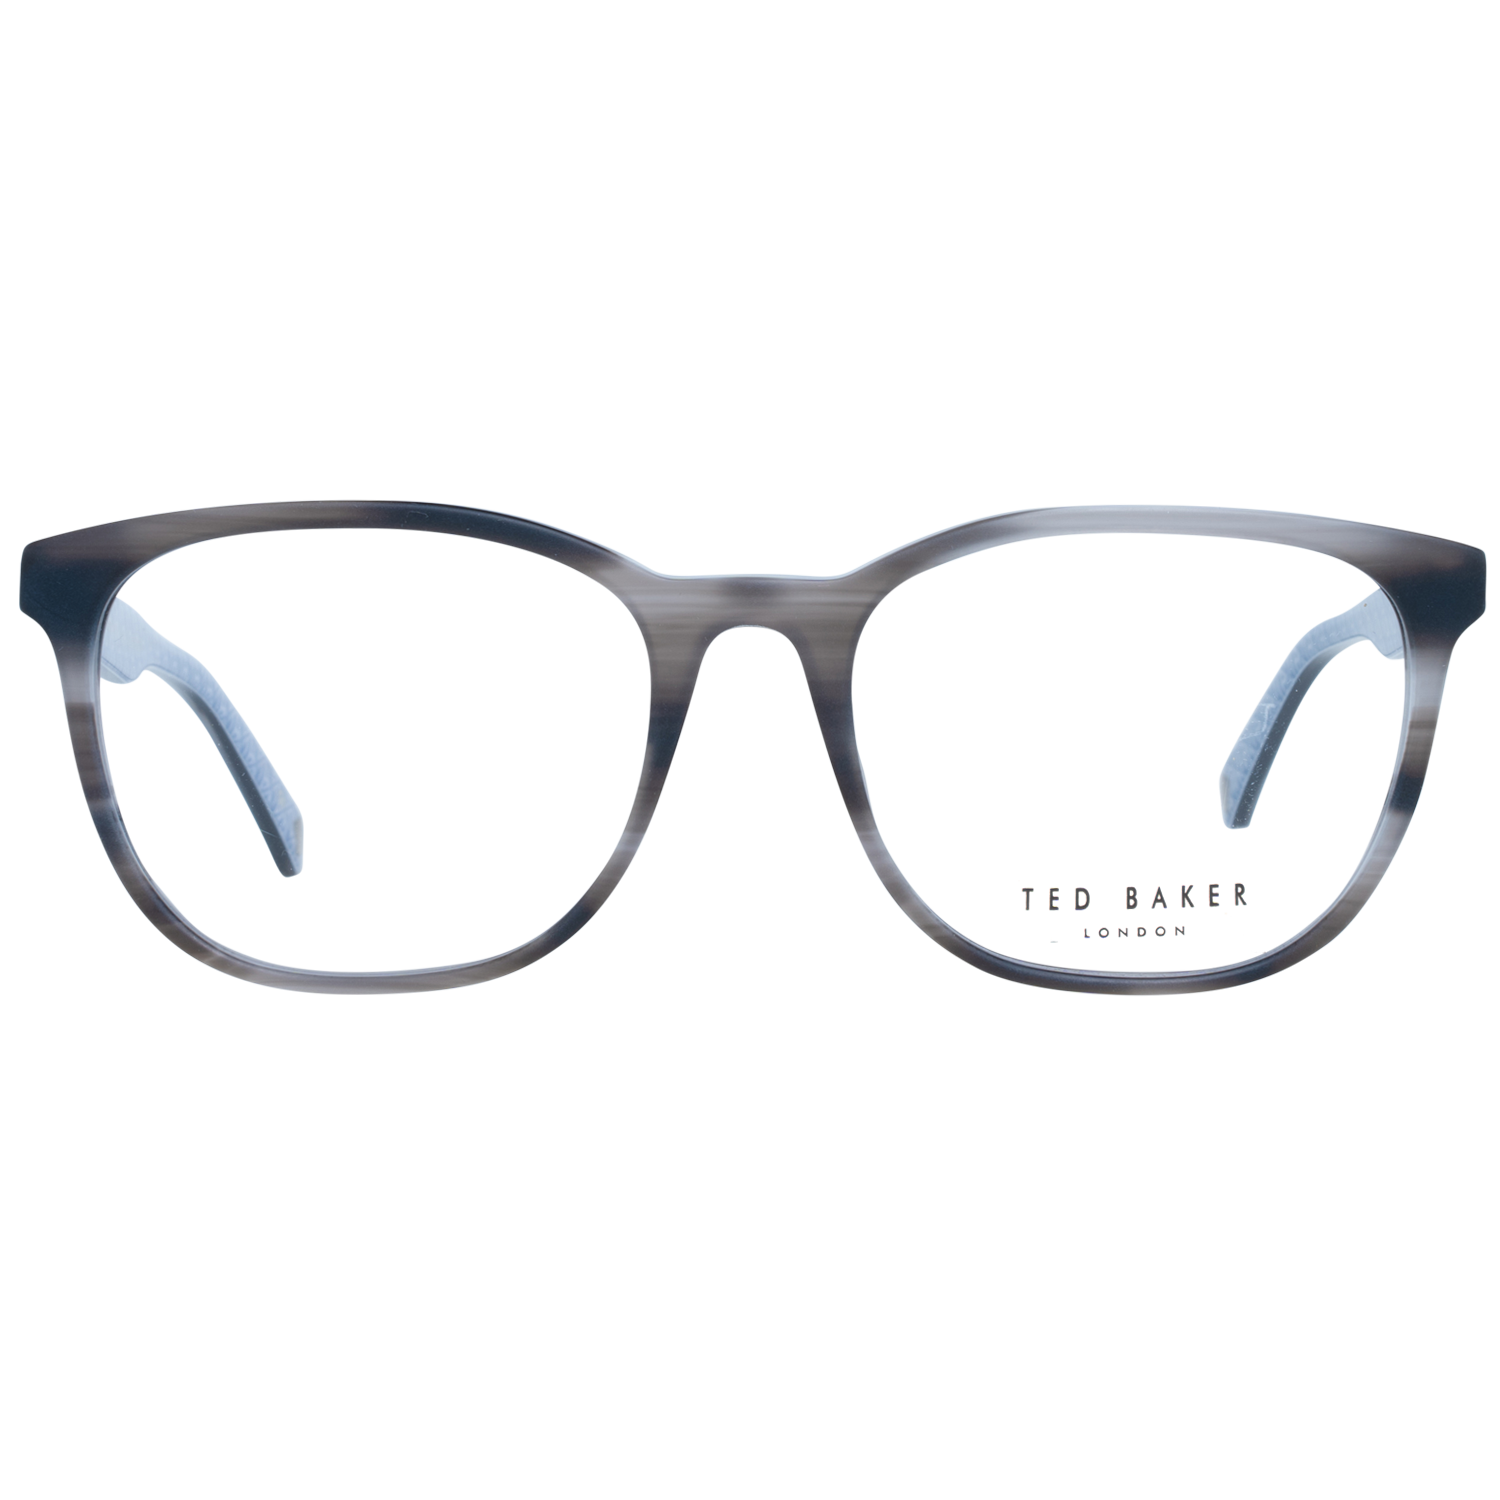 Ted Baker Frames Ted Baker Optical Frame Prescription Glasses TB8241 955 55 Eyeglasses Eyewear UK USA Australia 